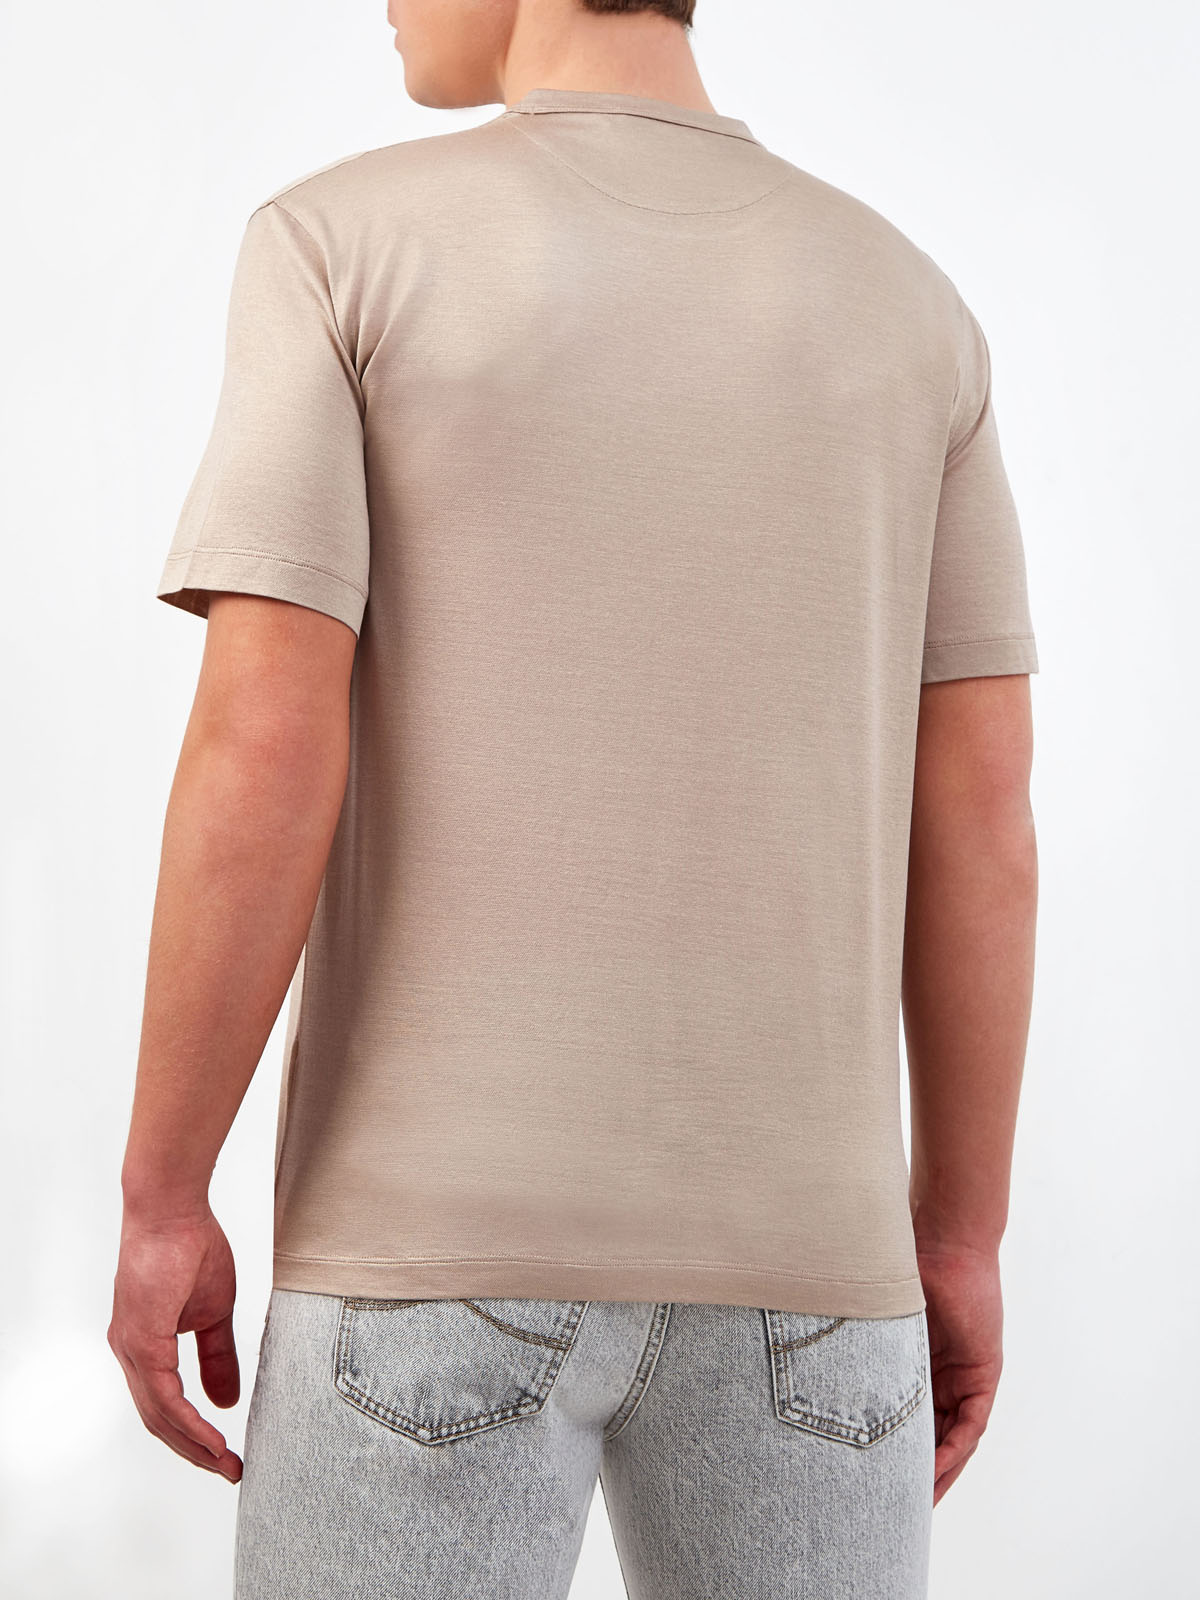 Однотонная футболка из гладкого шелка и хлопка CORTIGIANI, цвет бежевый, размер 50;52;54;56;58;60;62 - фото 4